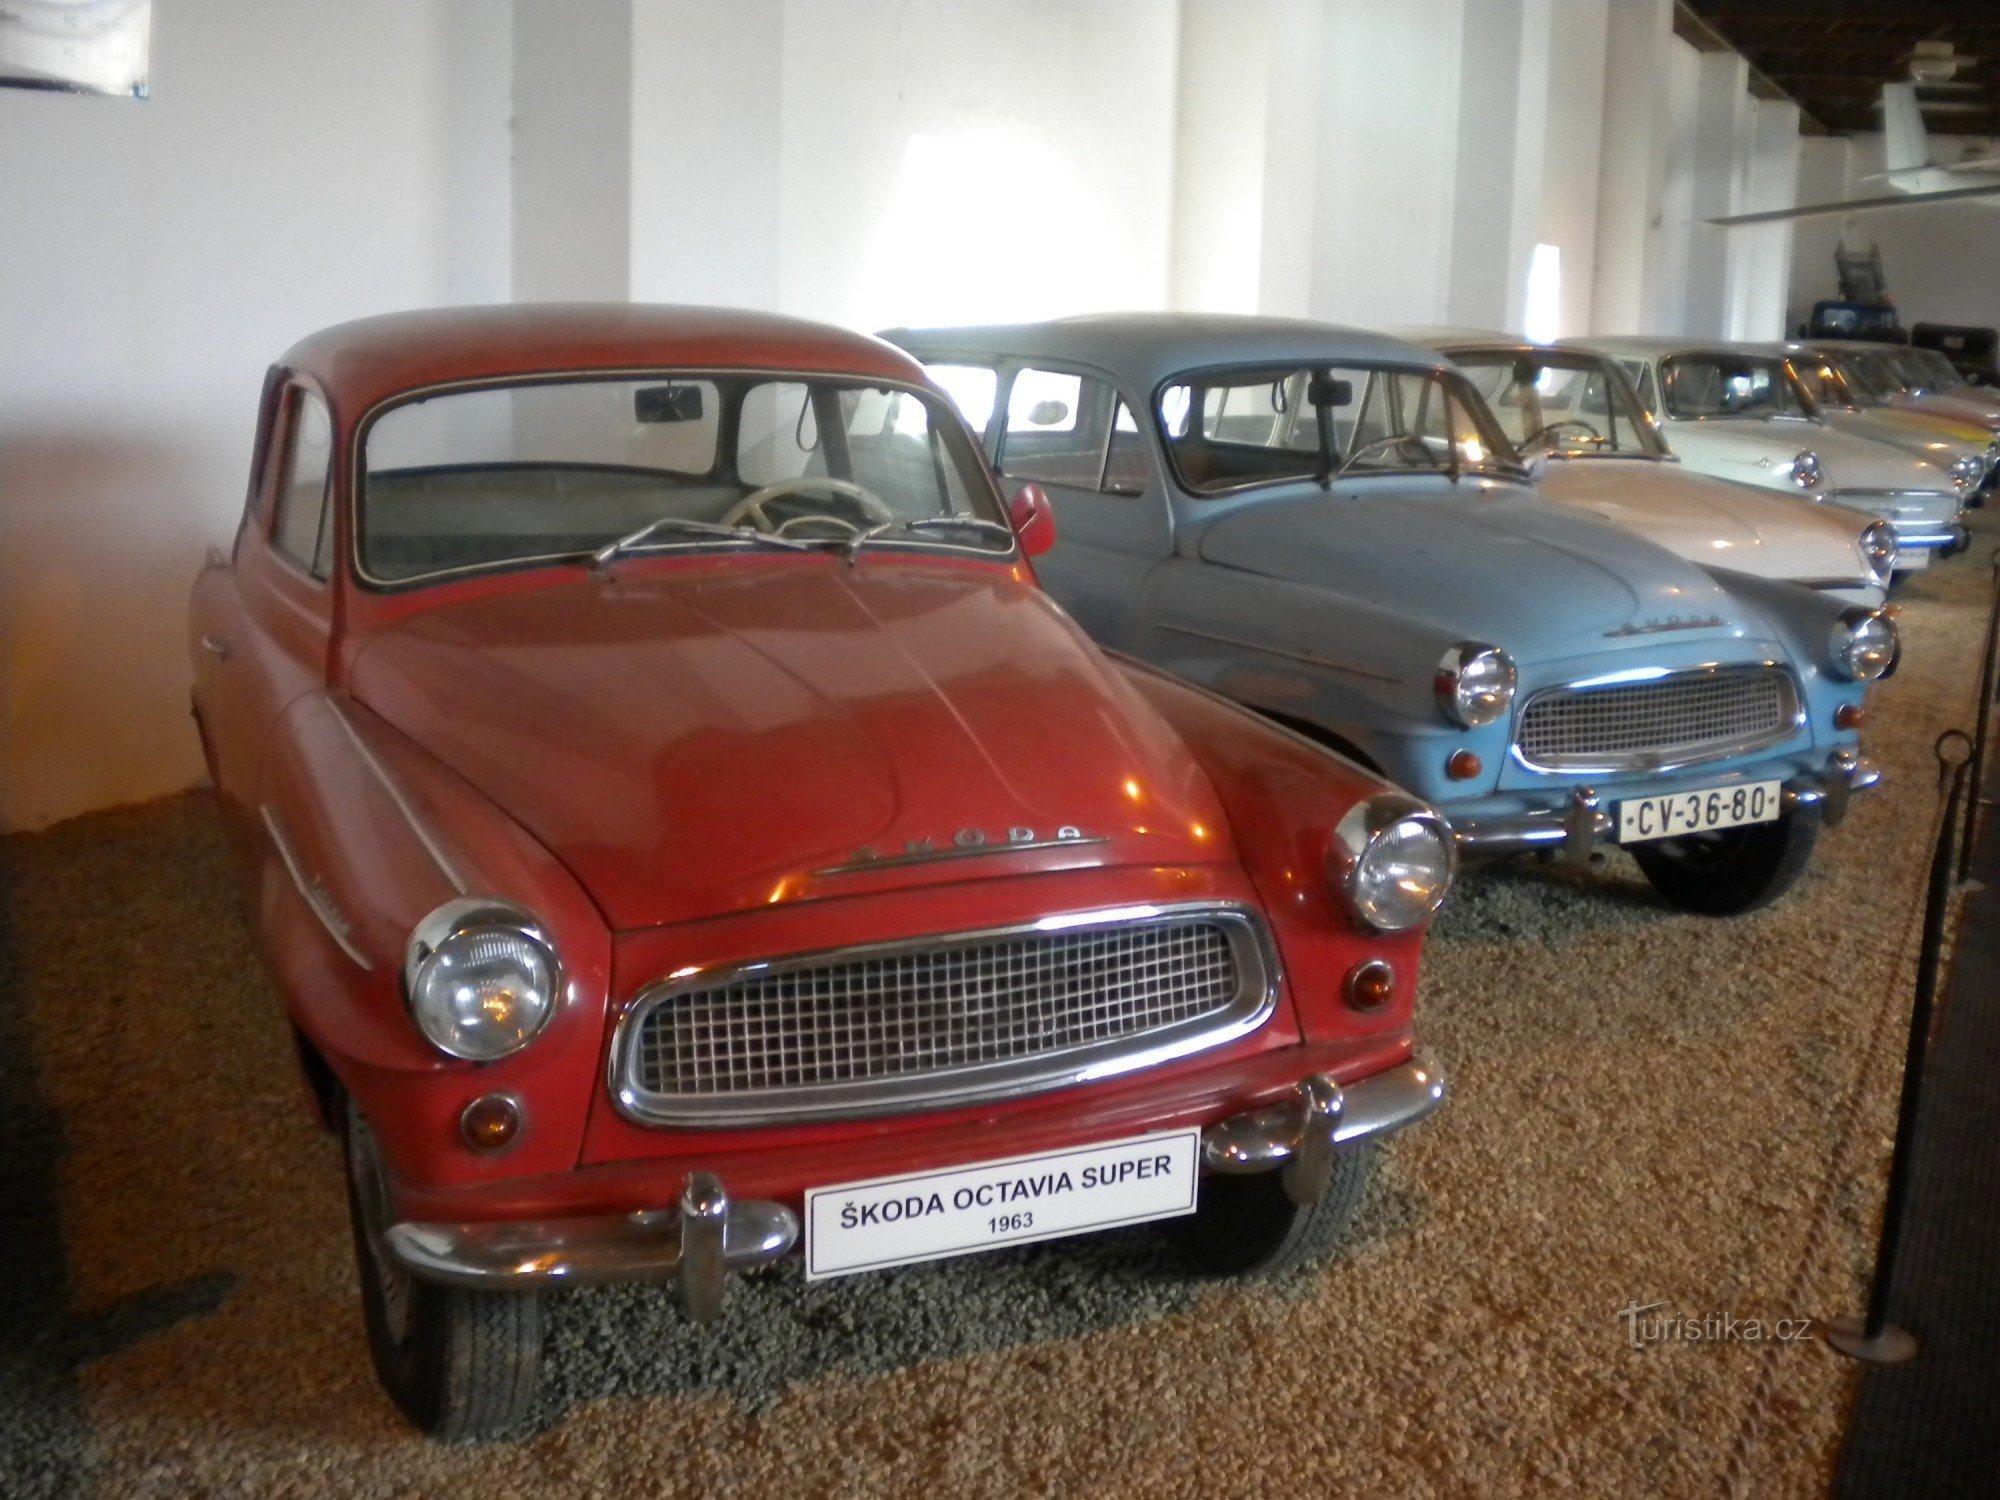 Muzeum samochodów Terezín